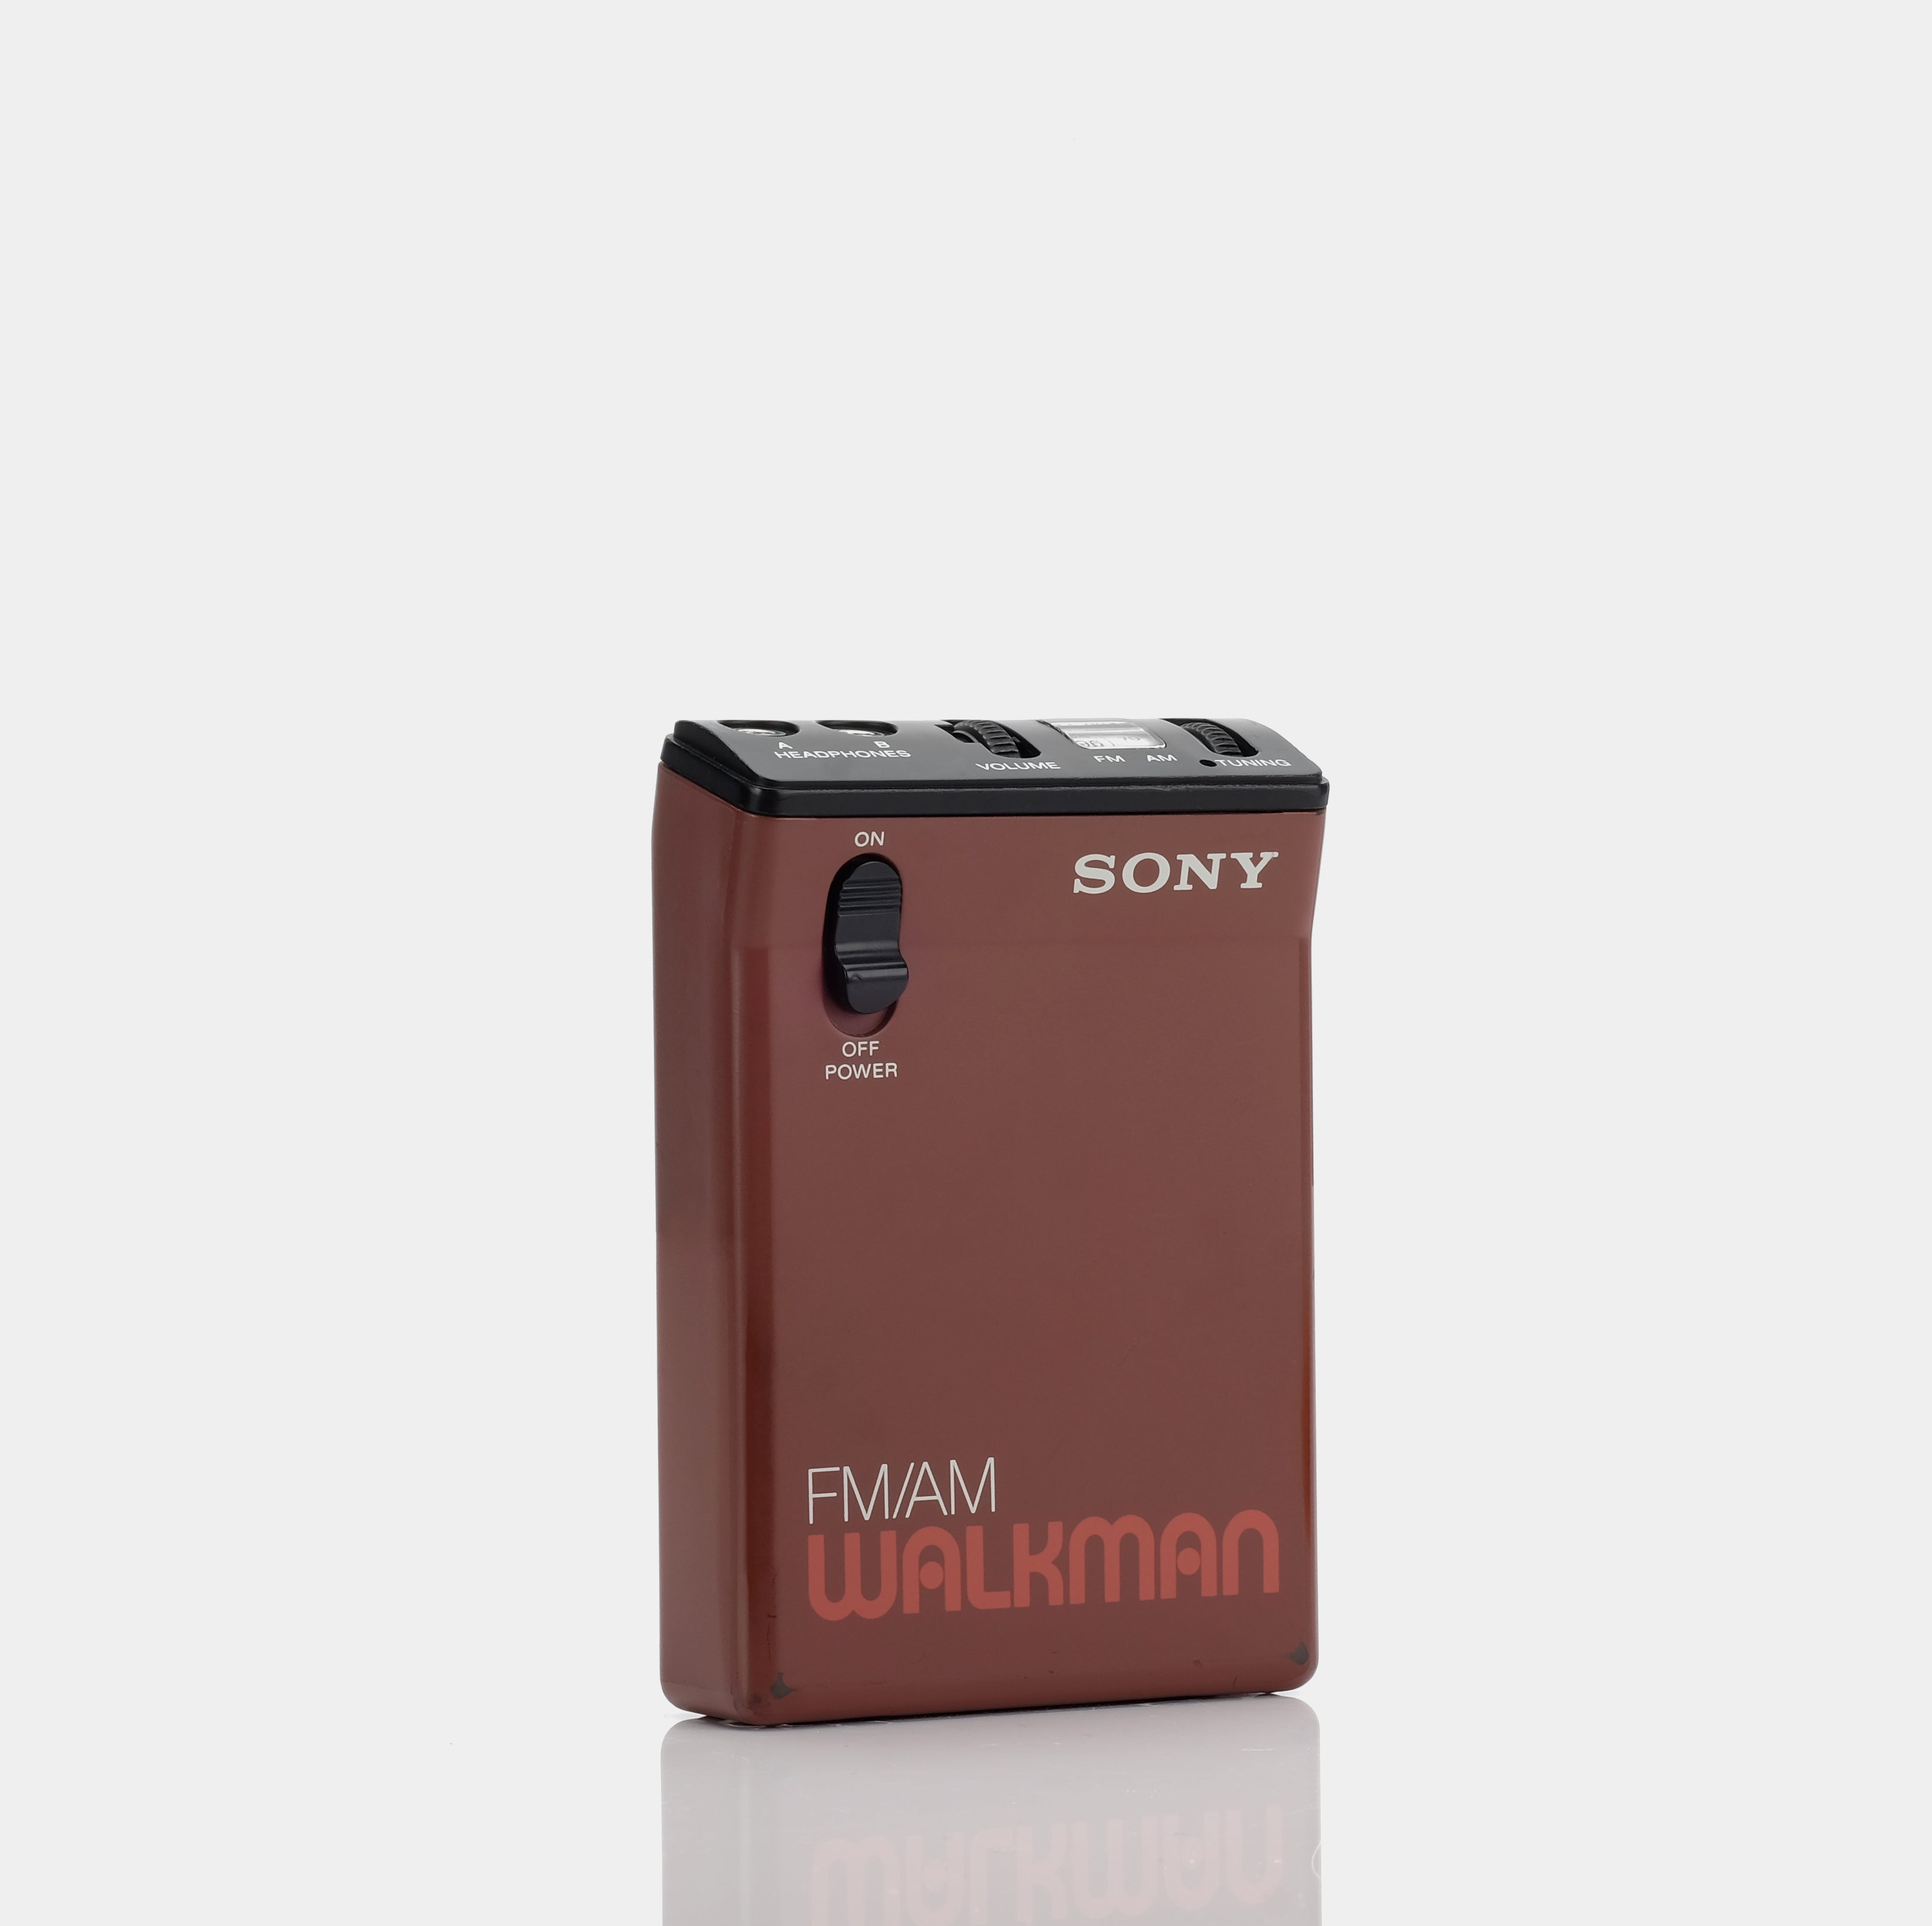 Sony Walkman SRF-33W AM/FM Portable Radio